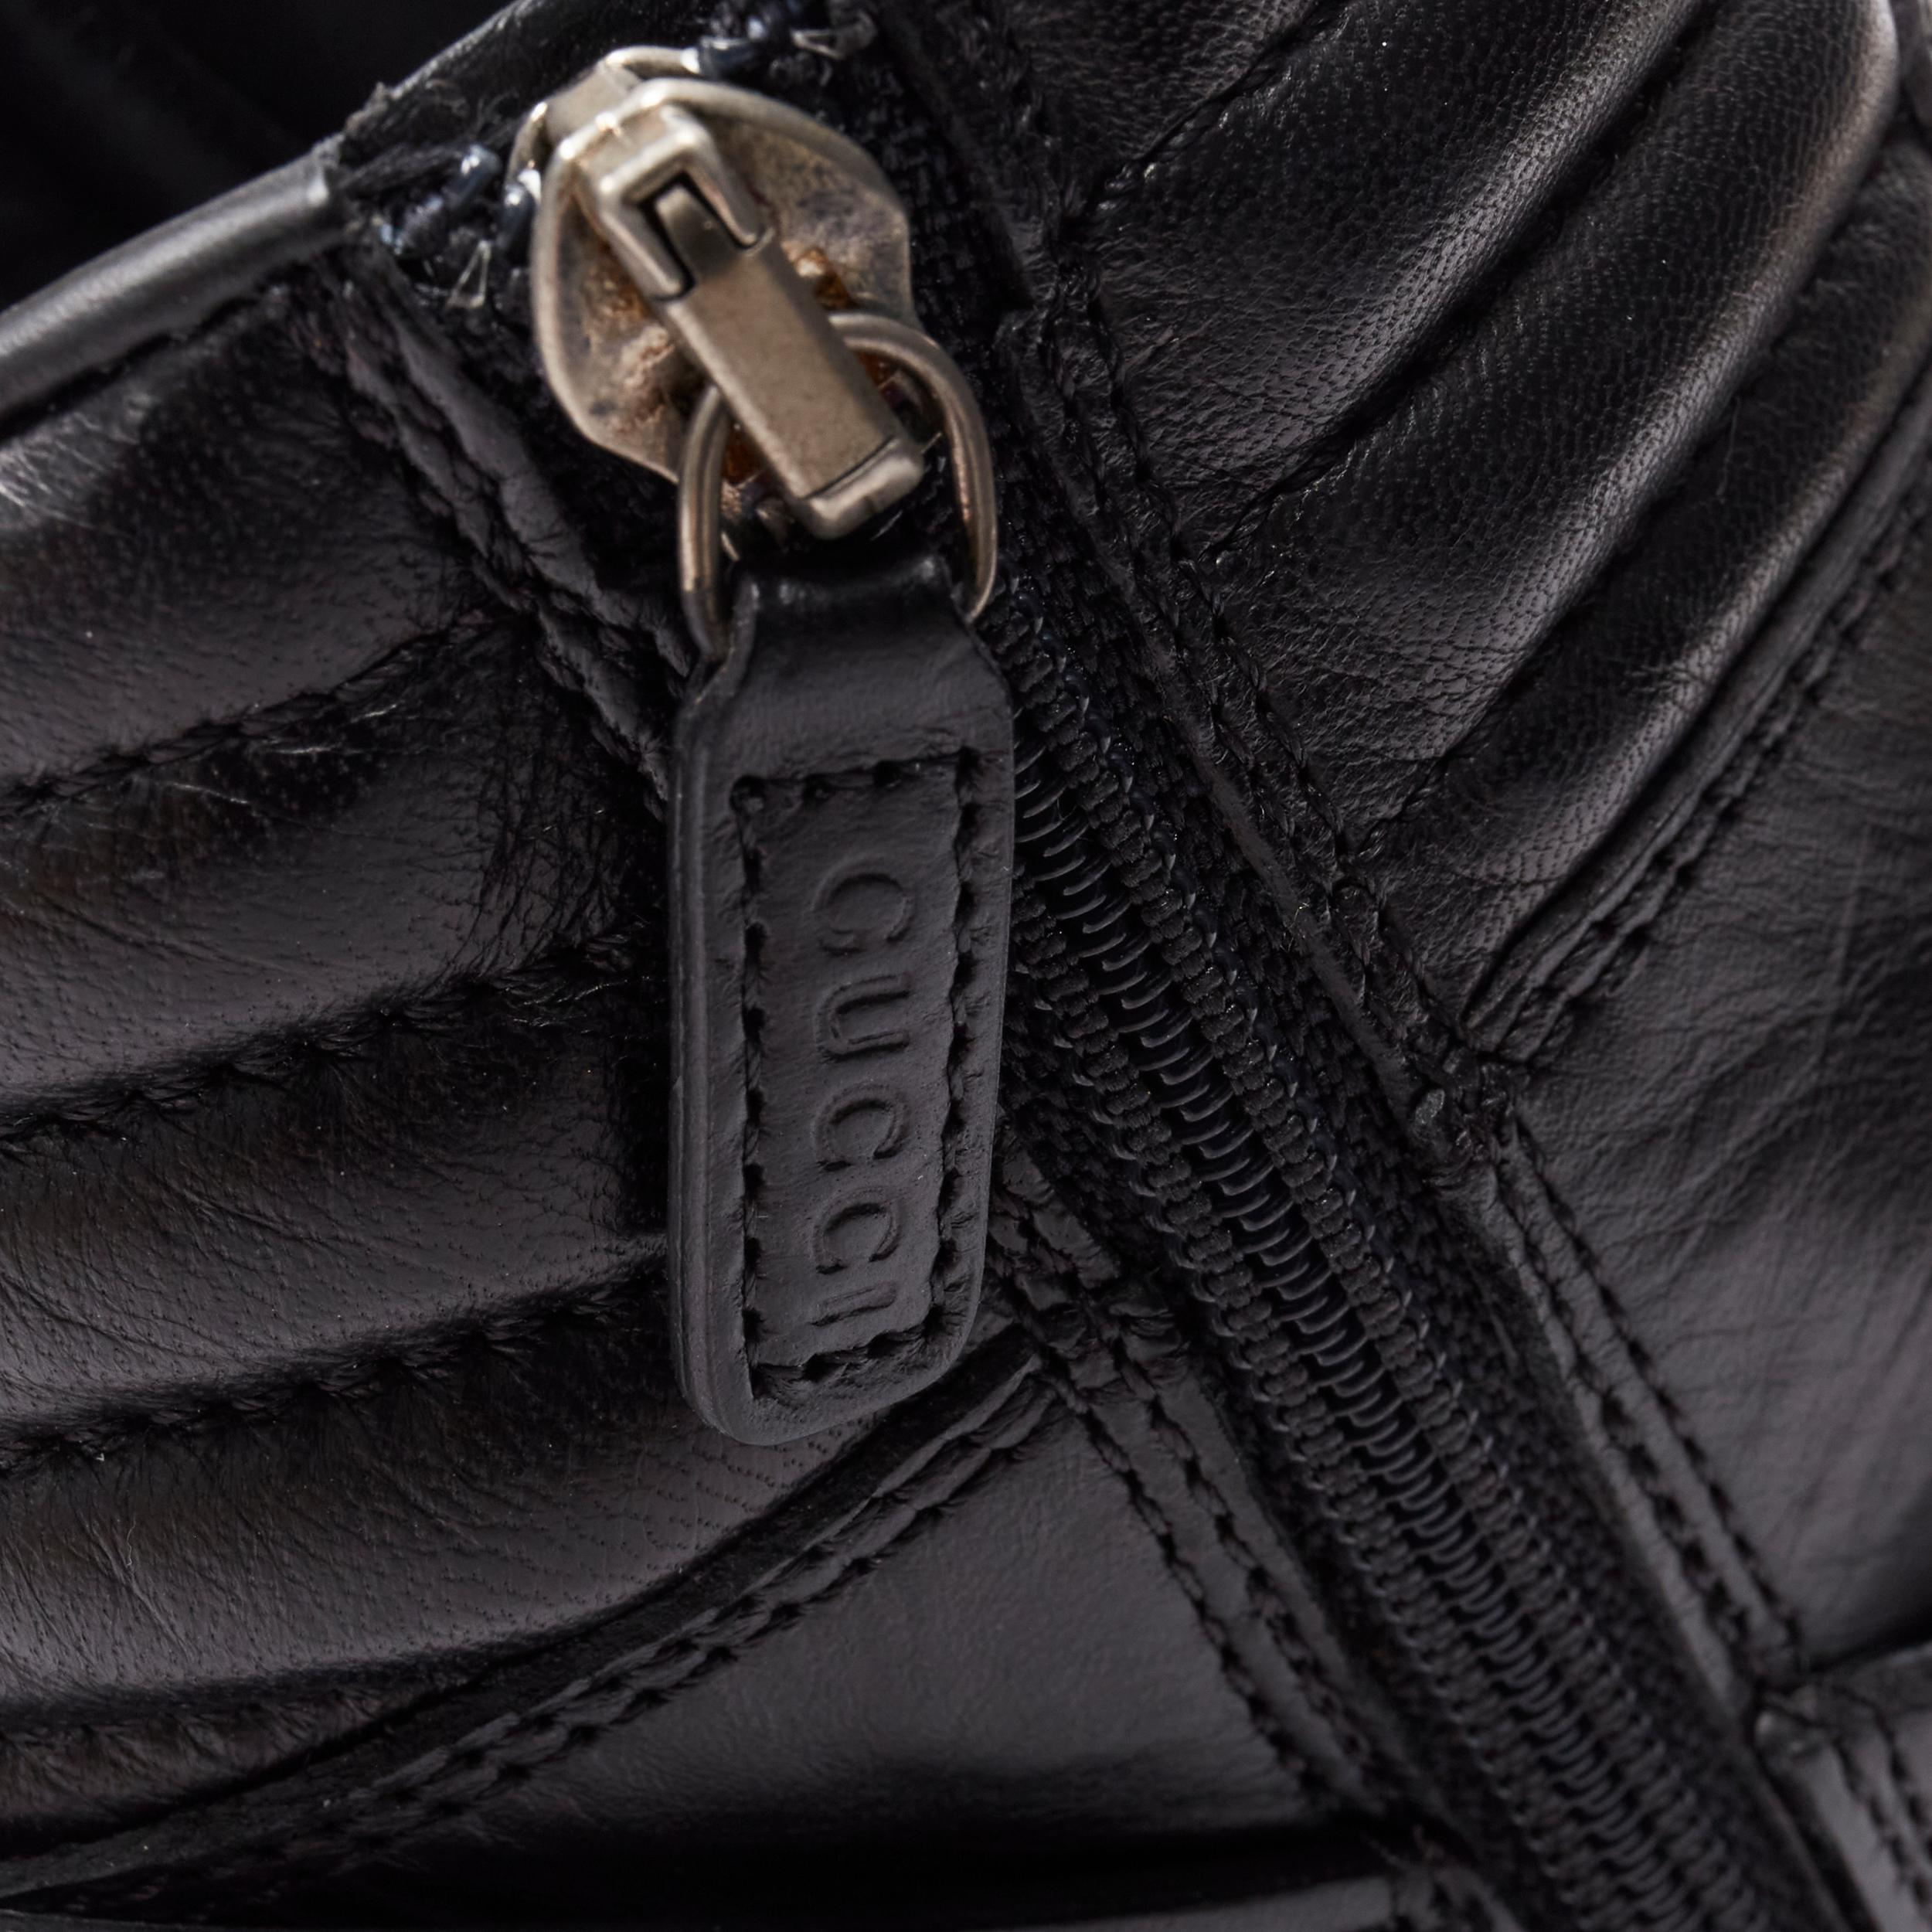 rare GUCCI Horsebit harness black leather gum sole high top sneaker UK8 EU42 4